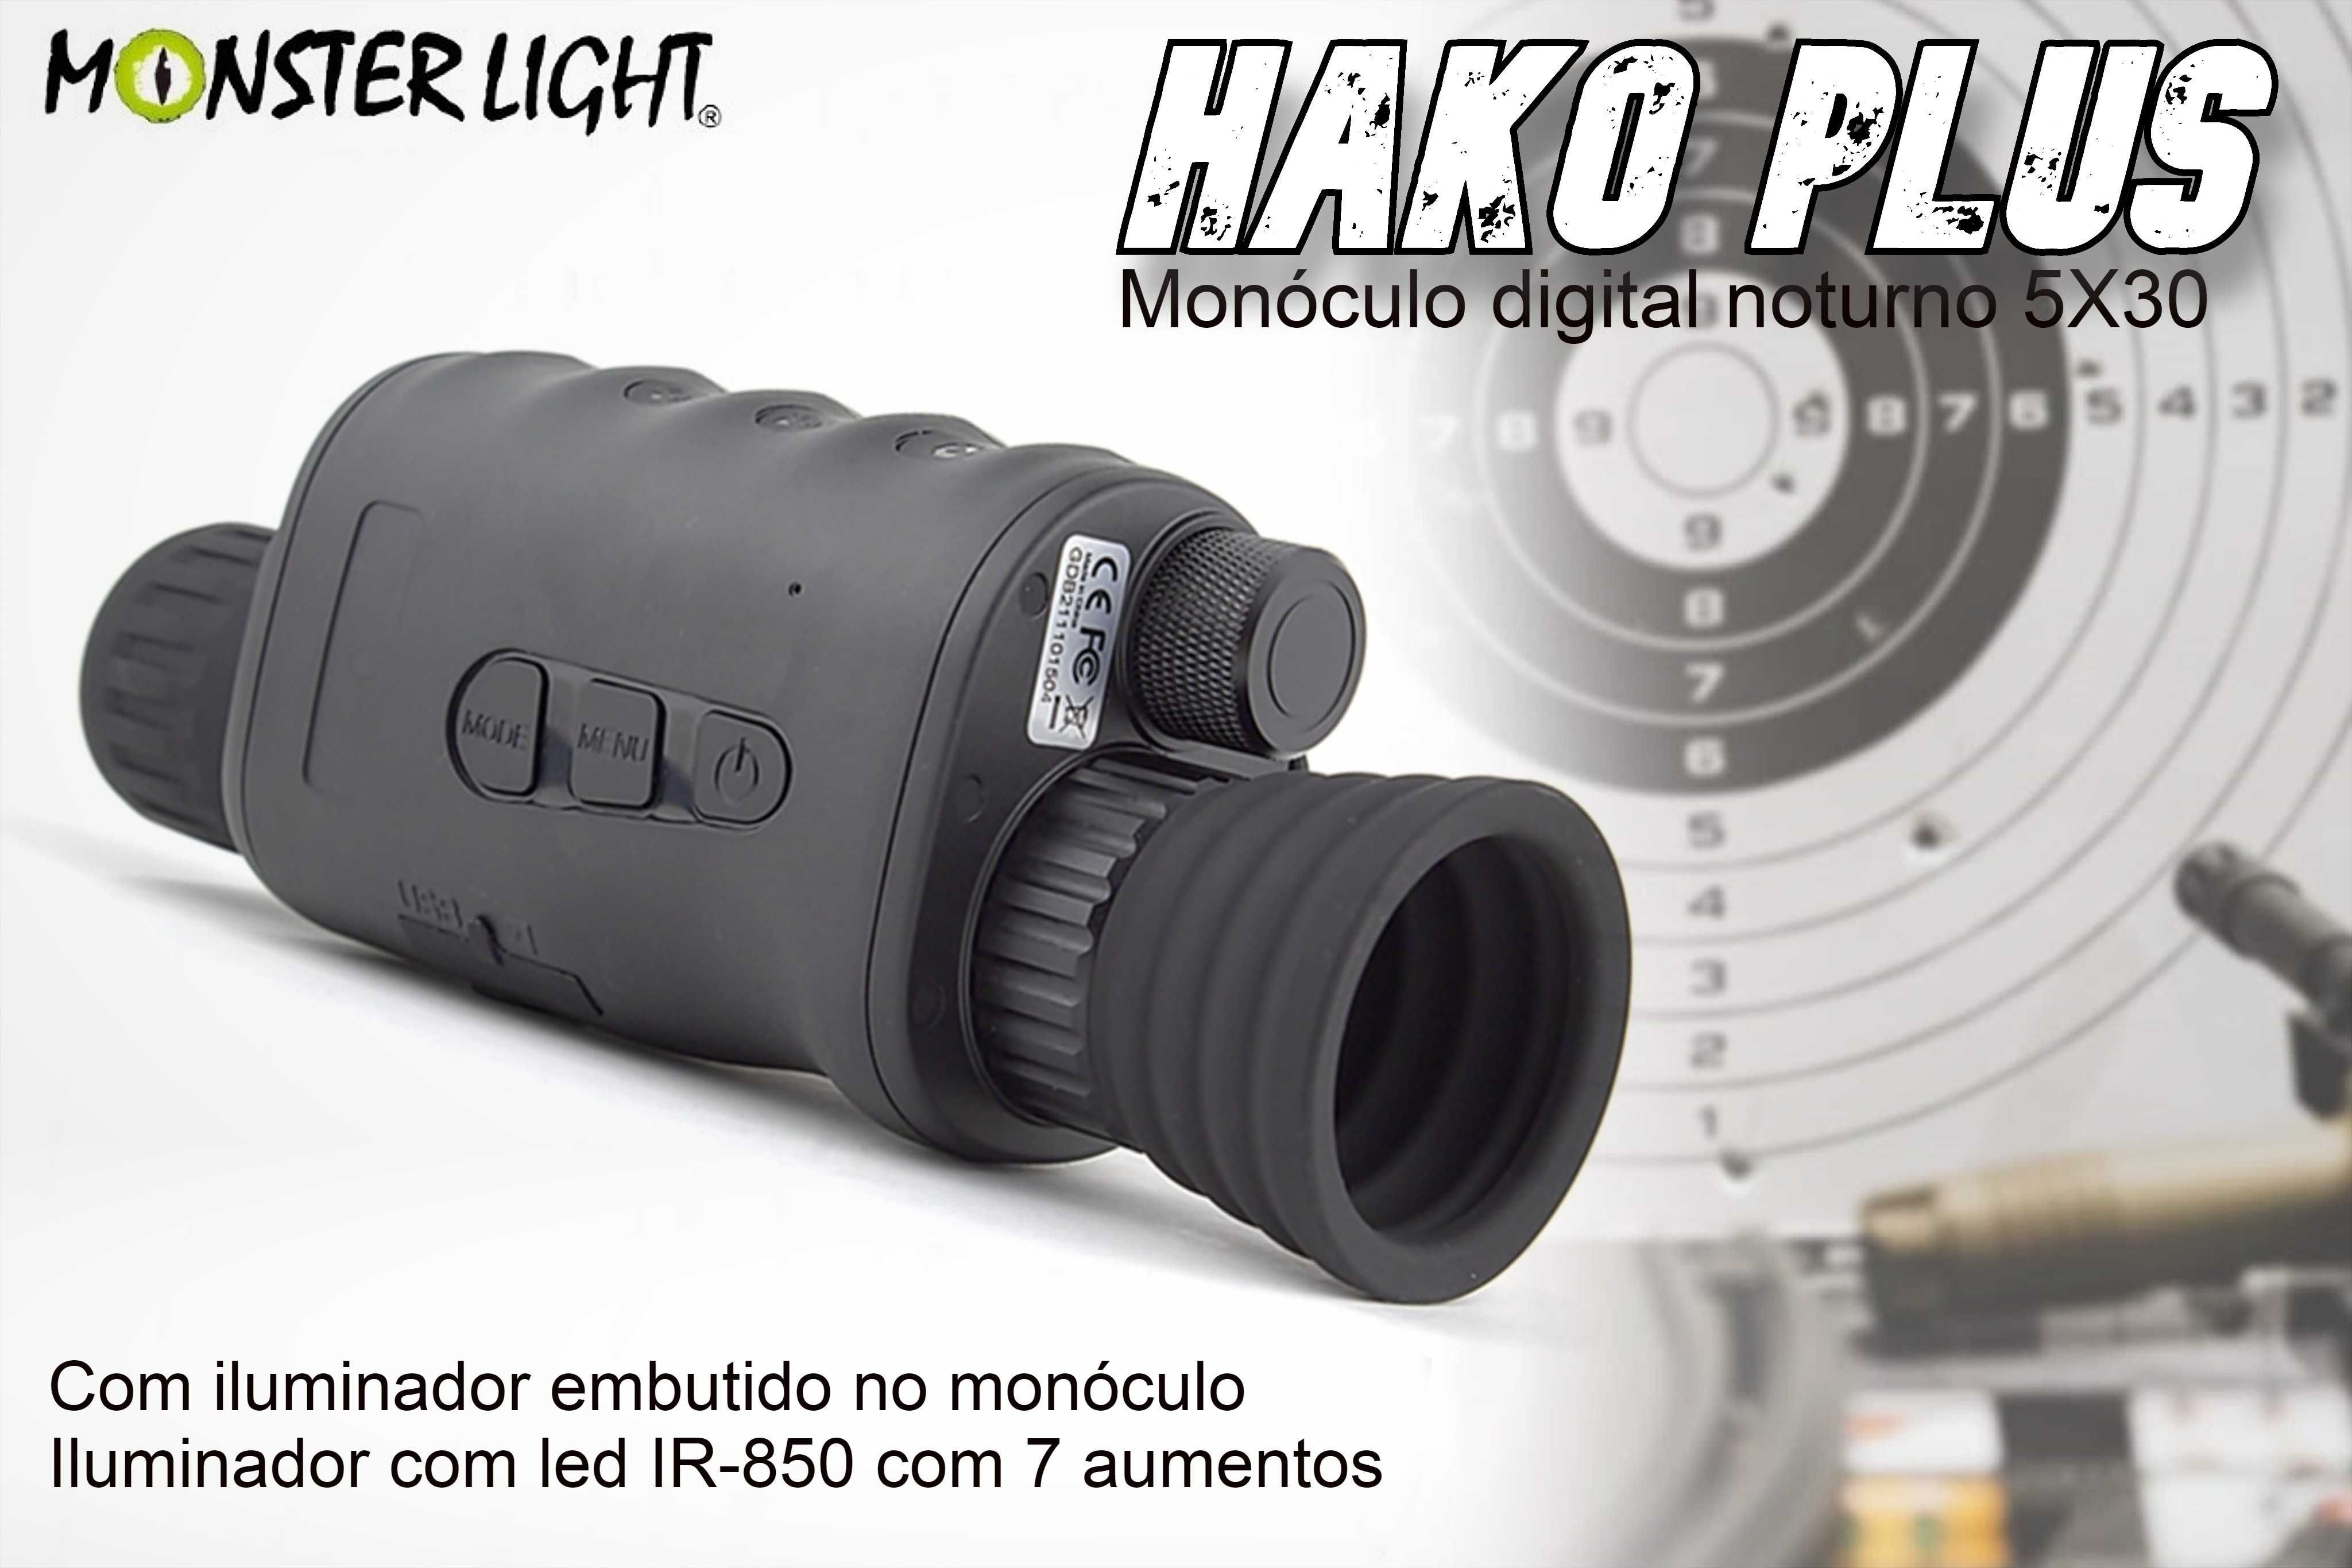 Monóculo de visão noturna Halo Plus com bateria recarregável